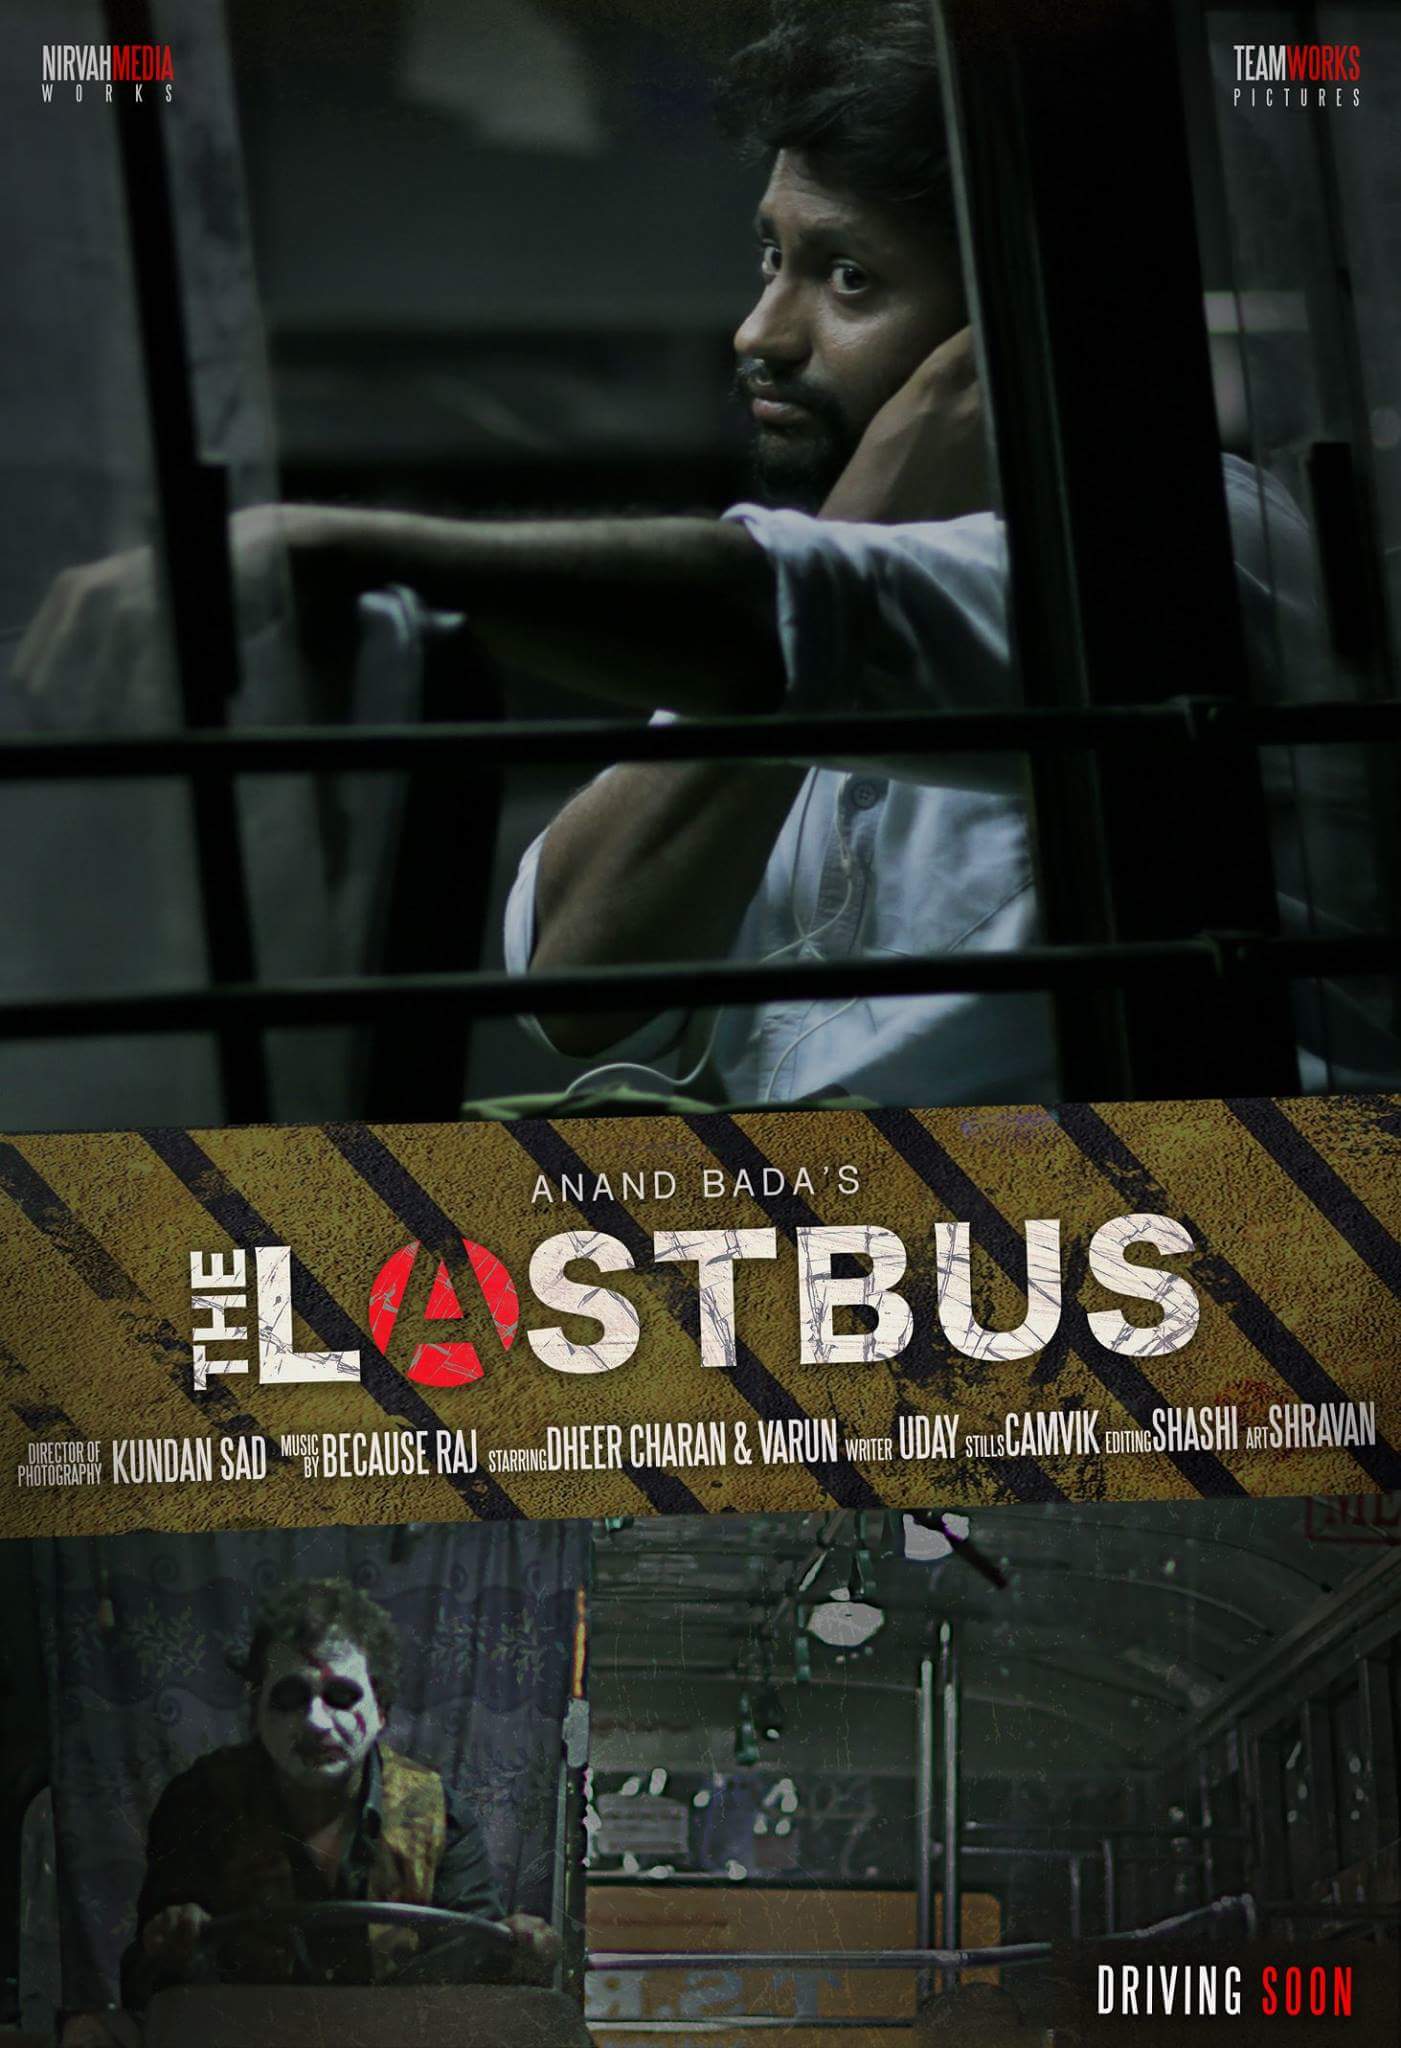 Last Bus